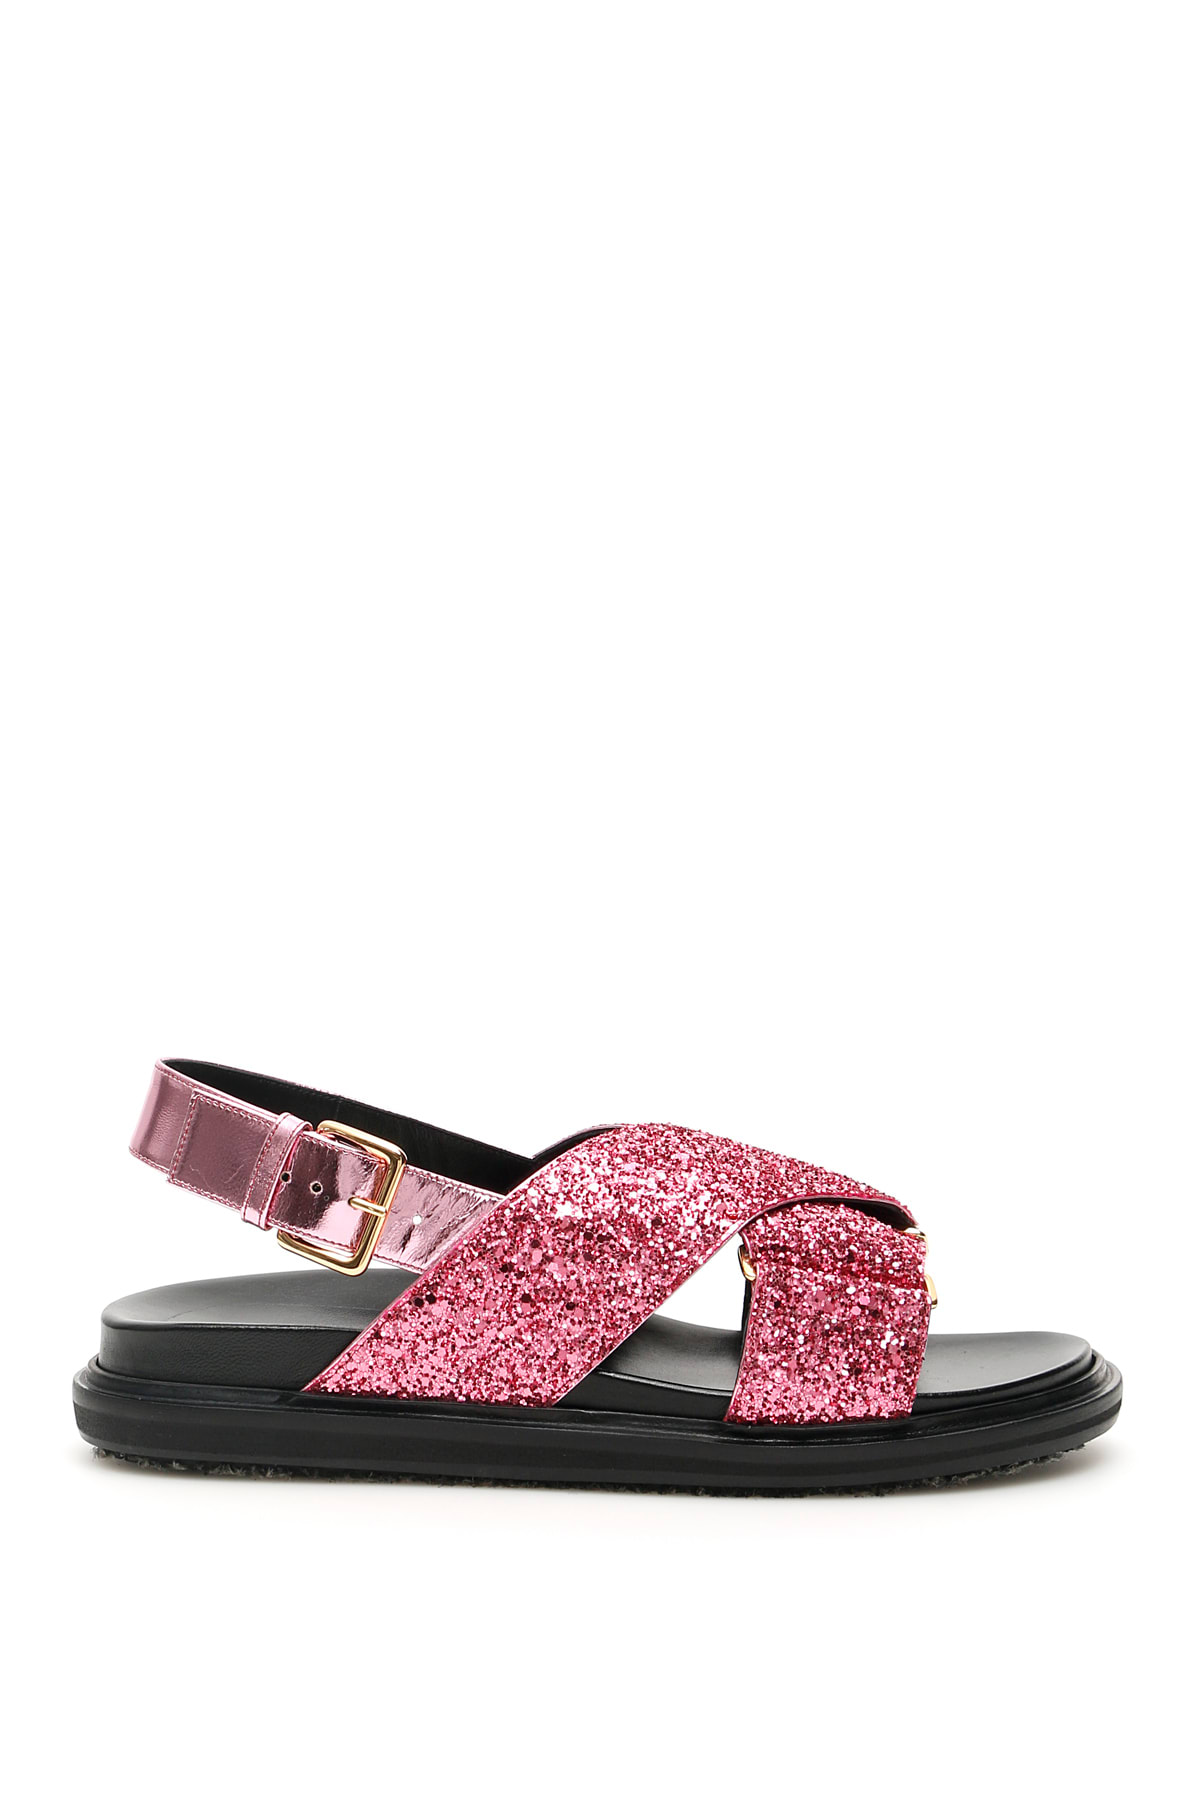 Marni Fussbett Glitter Sandals